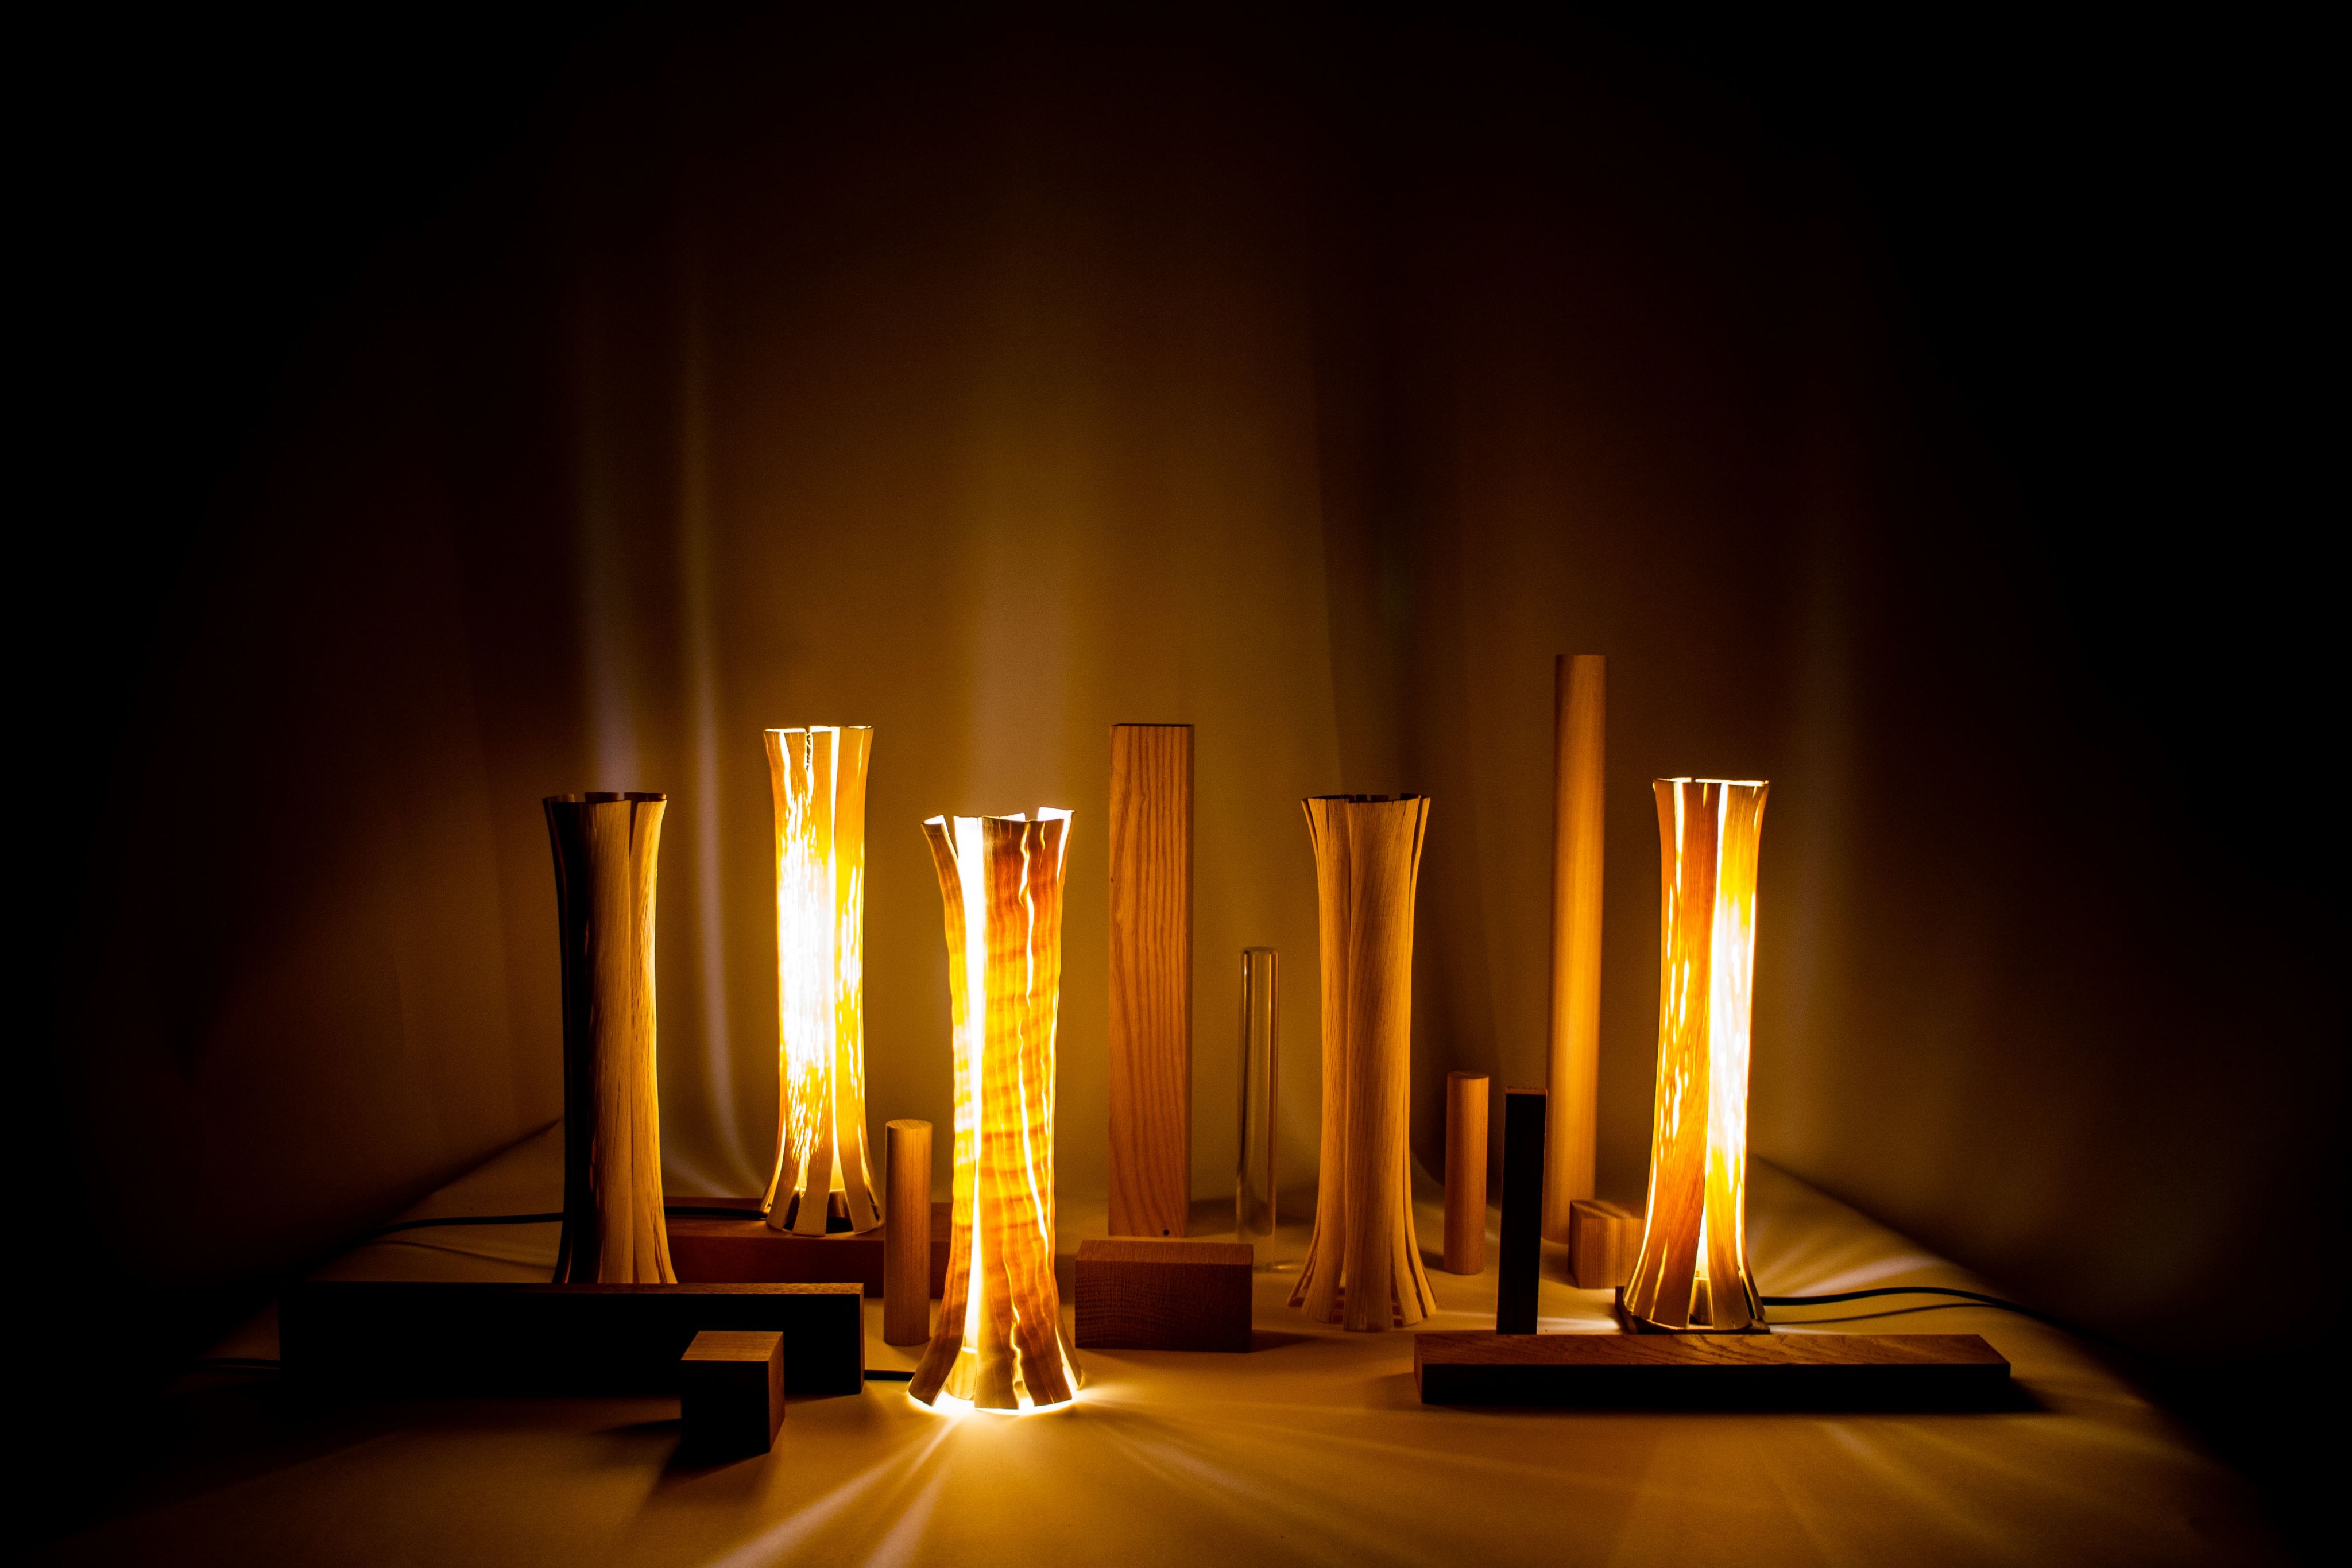 Wooden sculptures lit in a dark room